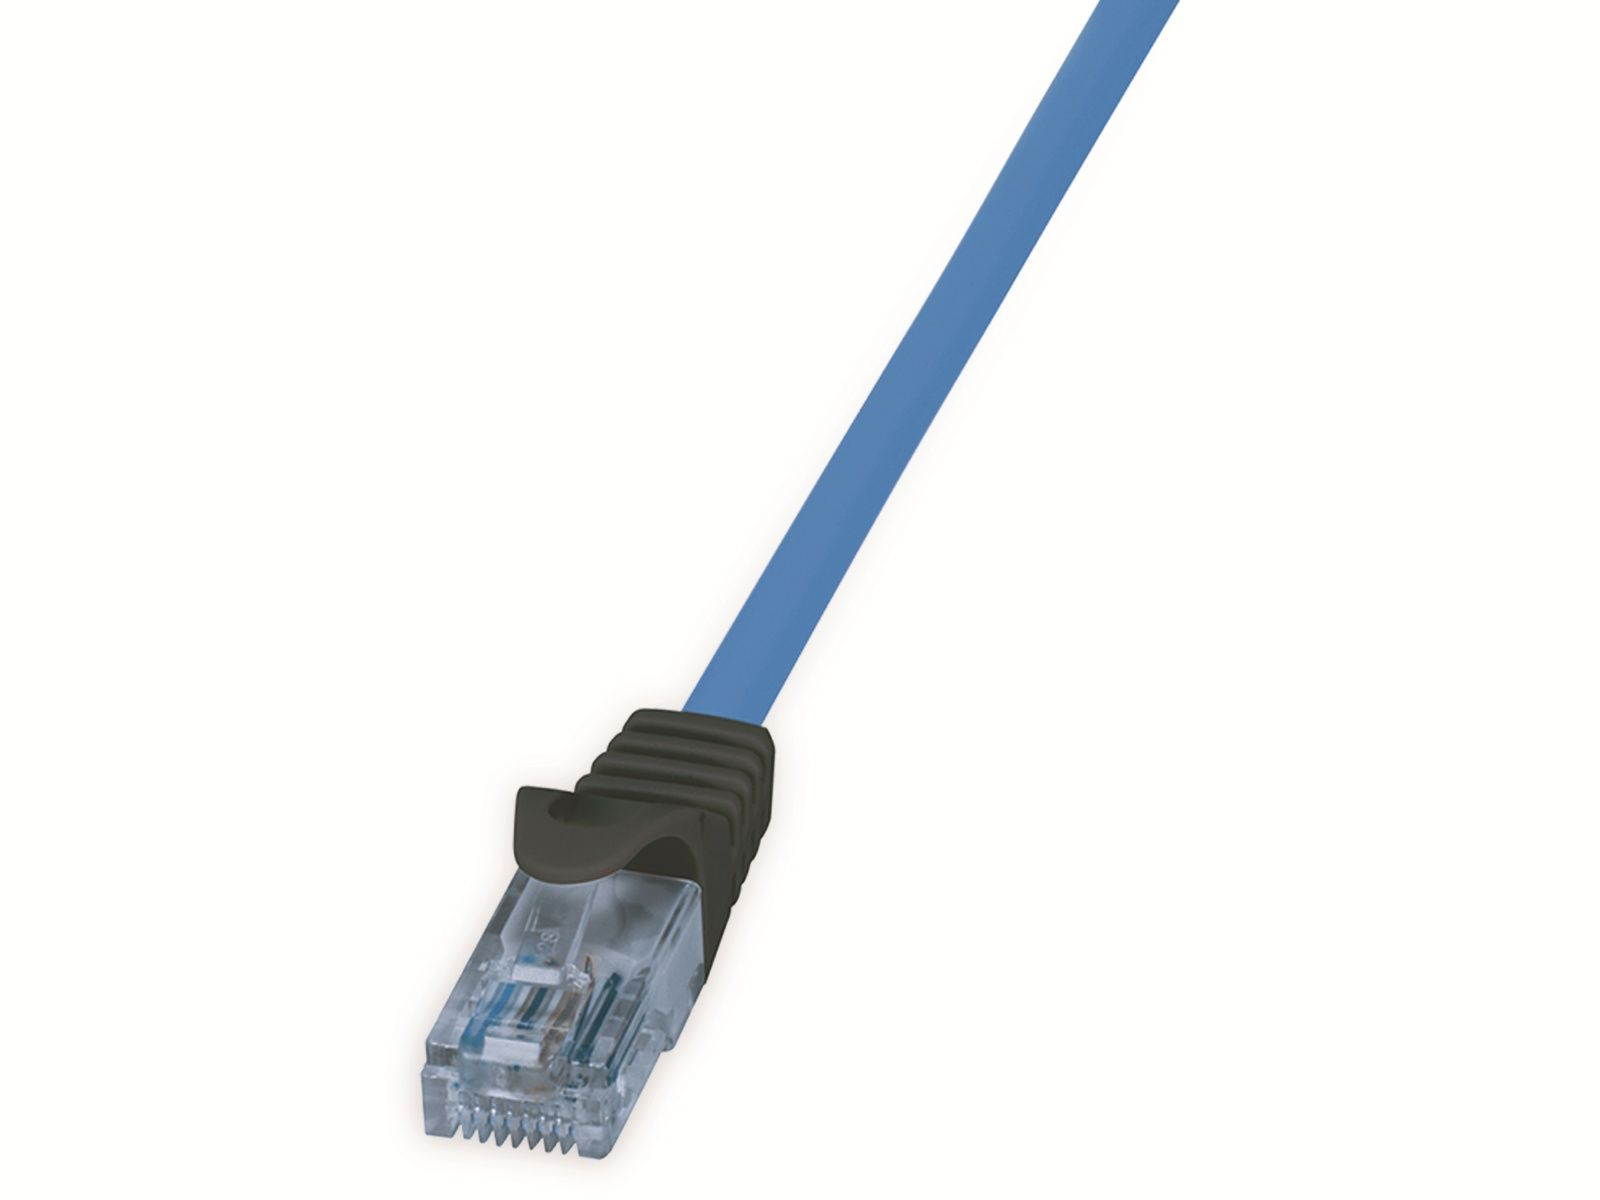 10G, LOGILINK 50 50 PoE, m U/UTP, Netzwerkkabel CPP015, blau, CAT.6a LOGILINK HDBT, Netzwerkkabel, m,